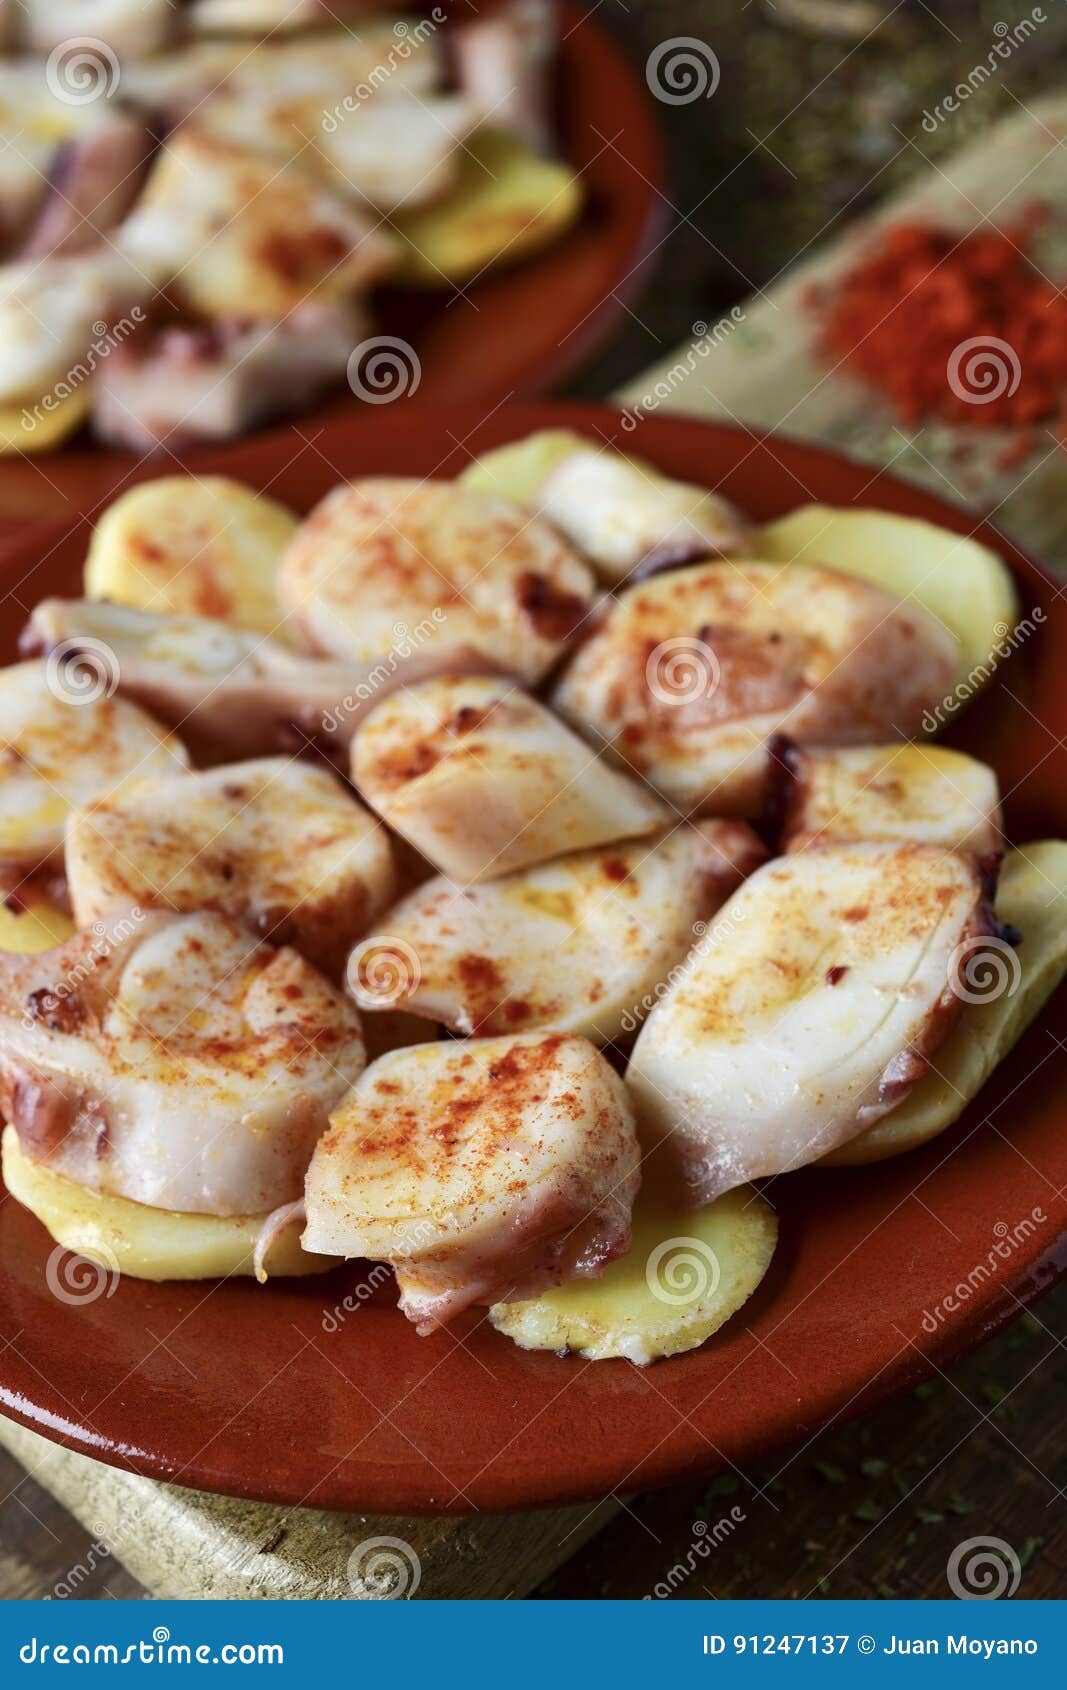 pulpo a la gallega, a recipe of octopus typical in spain